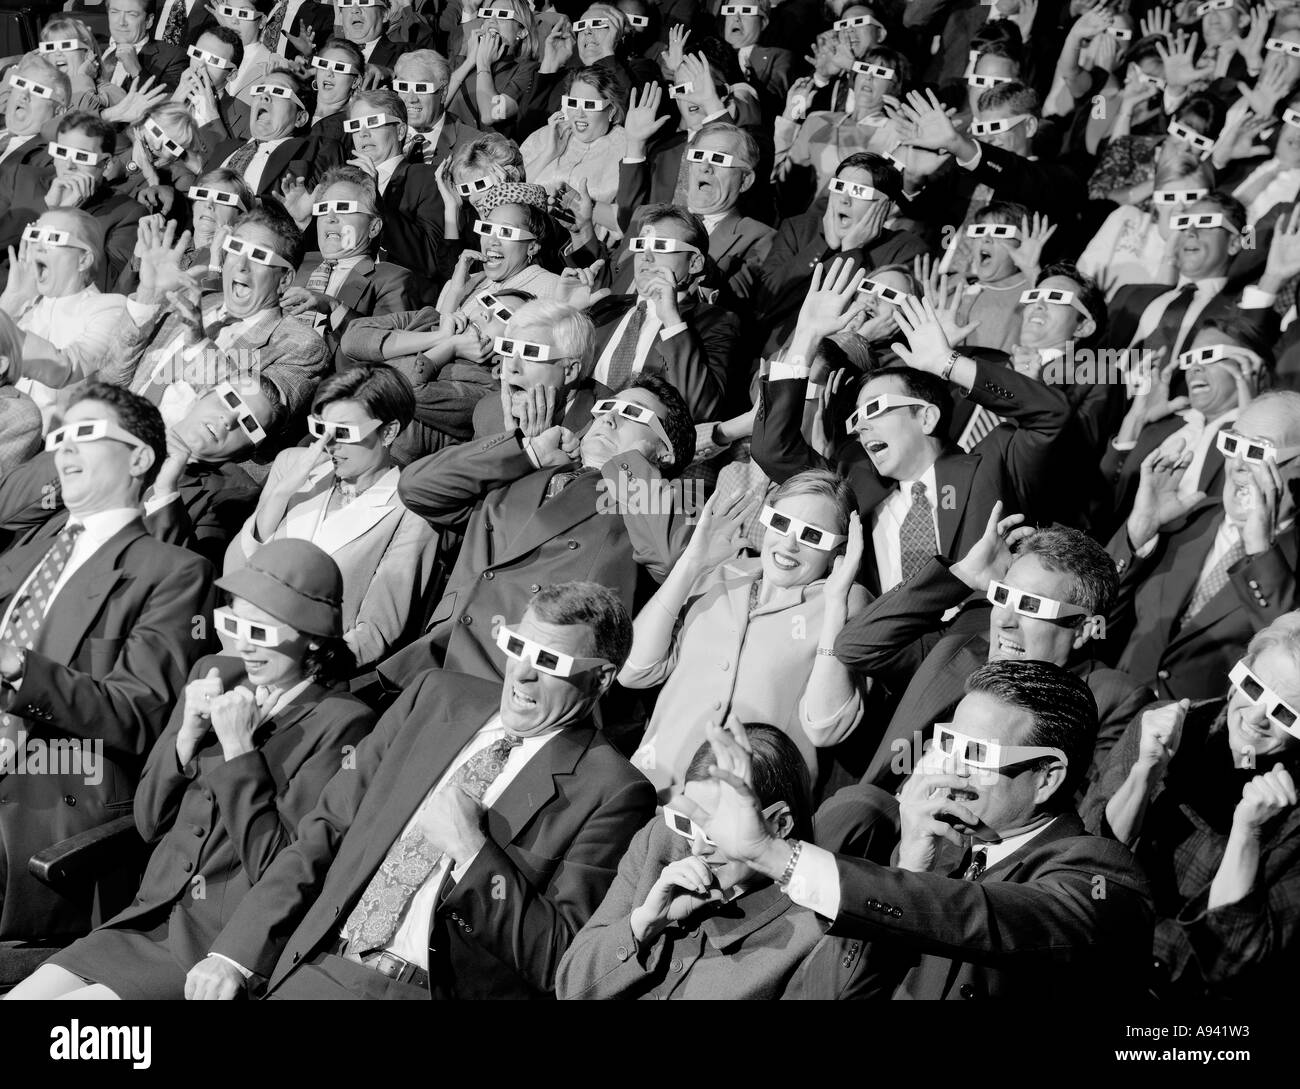 Portrait de groupe des spectateurs assis dans une salle de cinéma portant des lunettes 3-D Banque D'Images